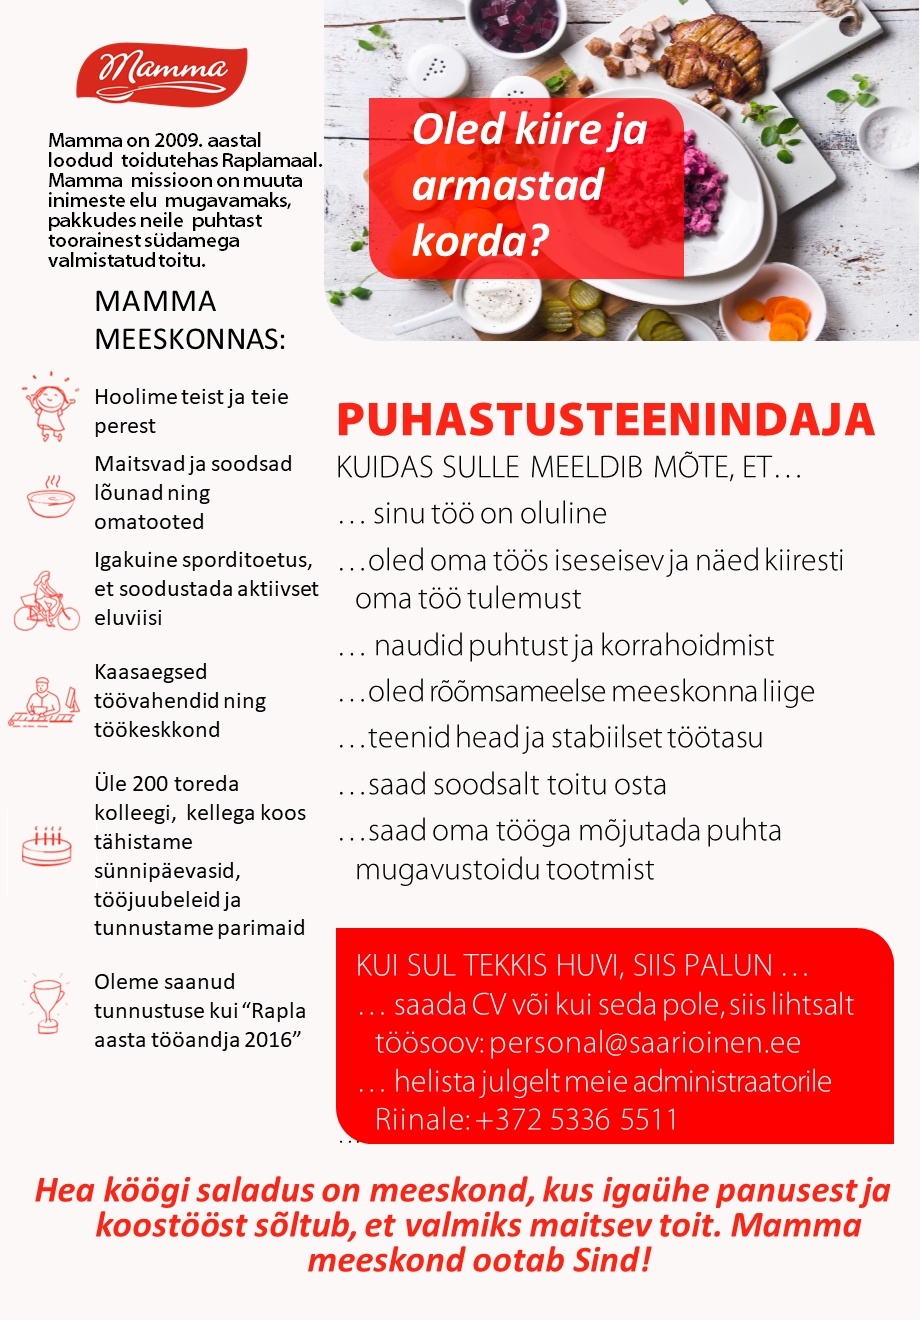 Saarioinen Eesti OÜ Puhastusteenindaja